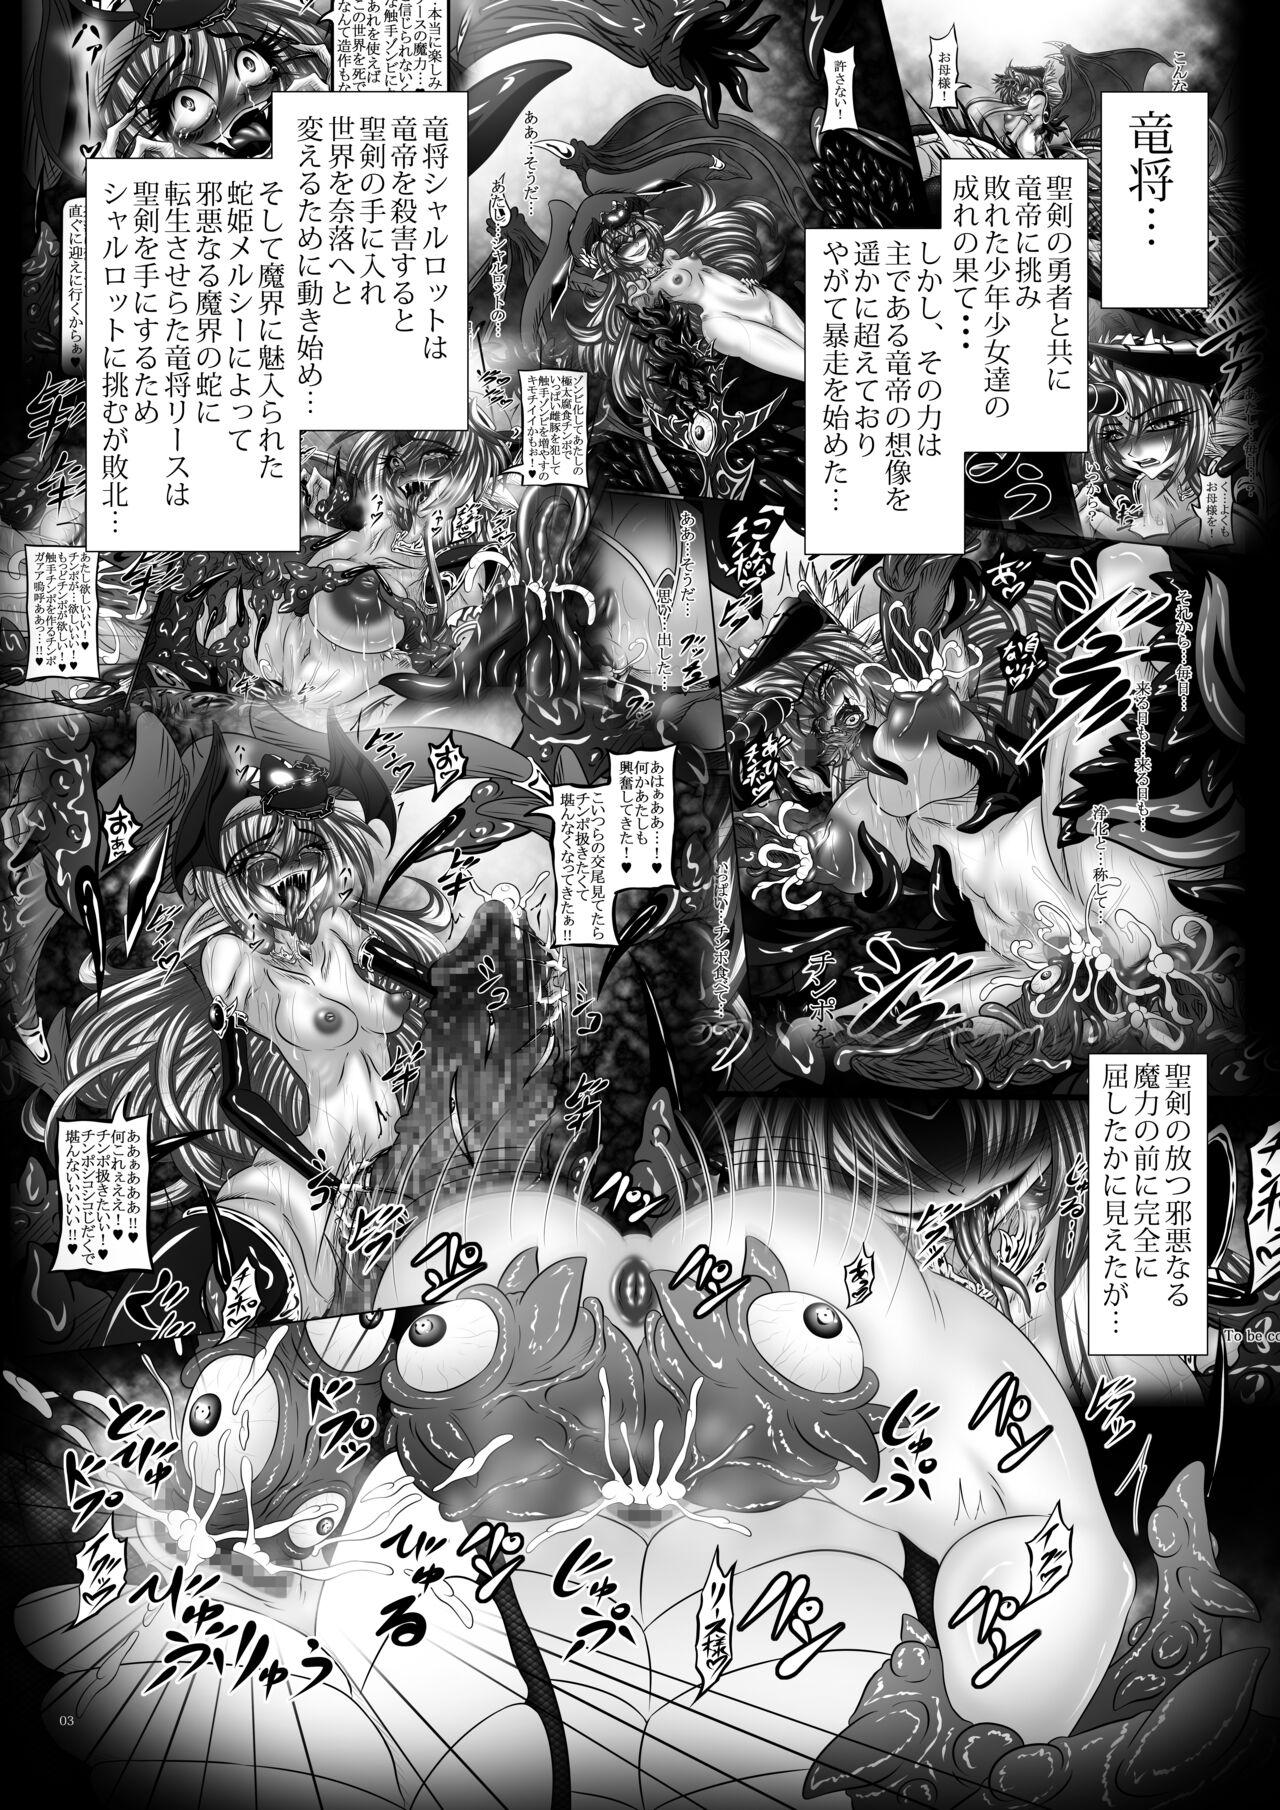 Bareback Dragon' s Fall V - Seiken densetsu 3 Maid - Page 2